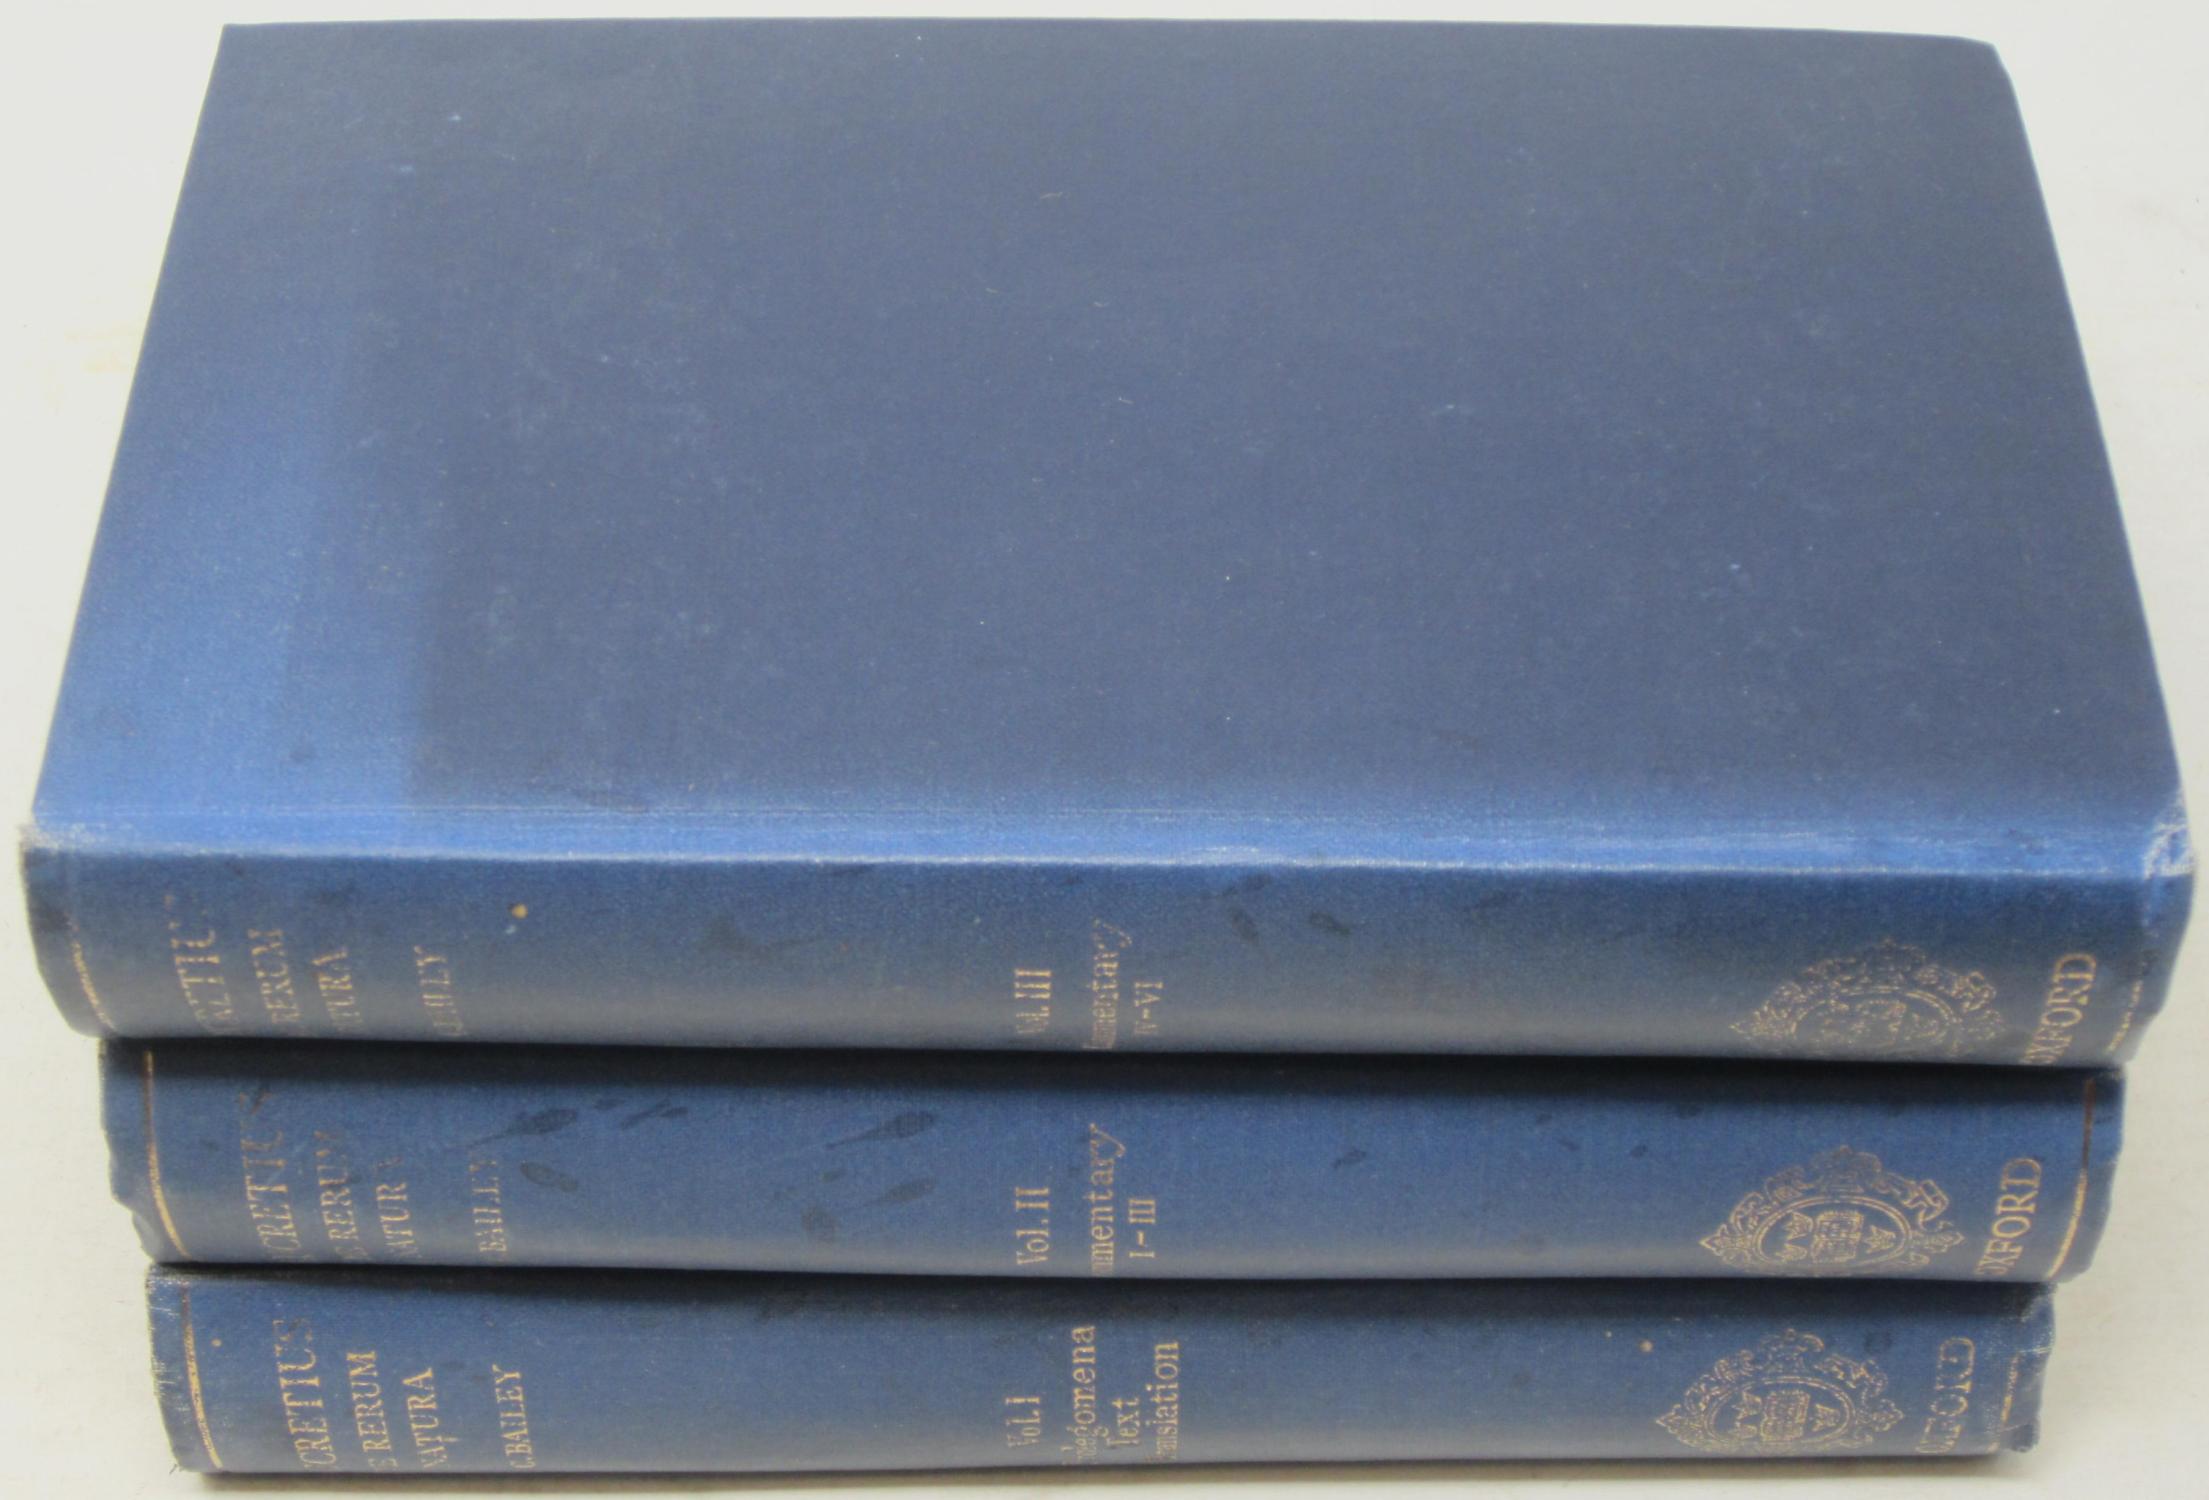 Titi Lucreti Cari: De Rerum Natura, Libri Sex (Three Volume Set) - Carus, Titus Lucretius & Cyril Bailey